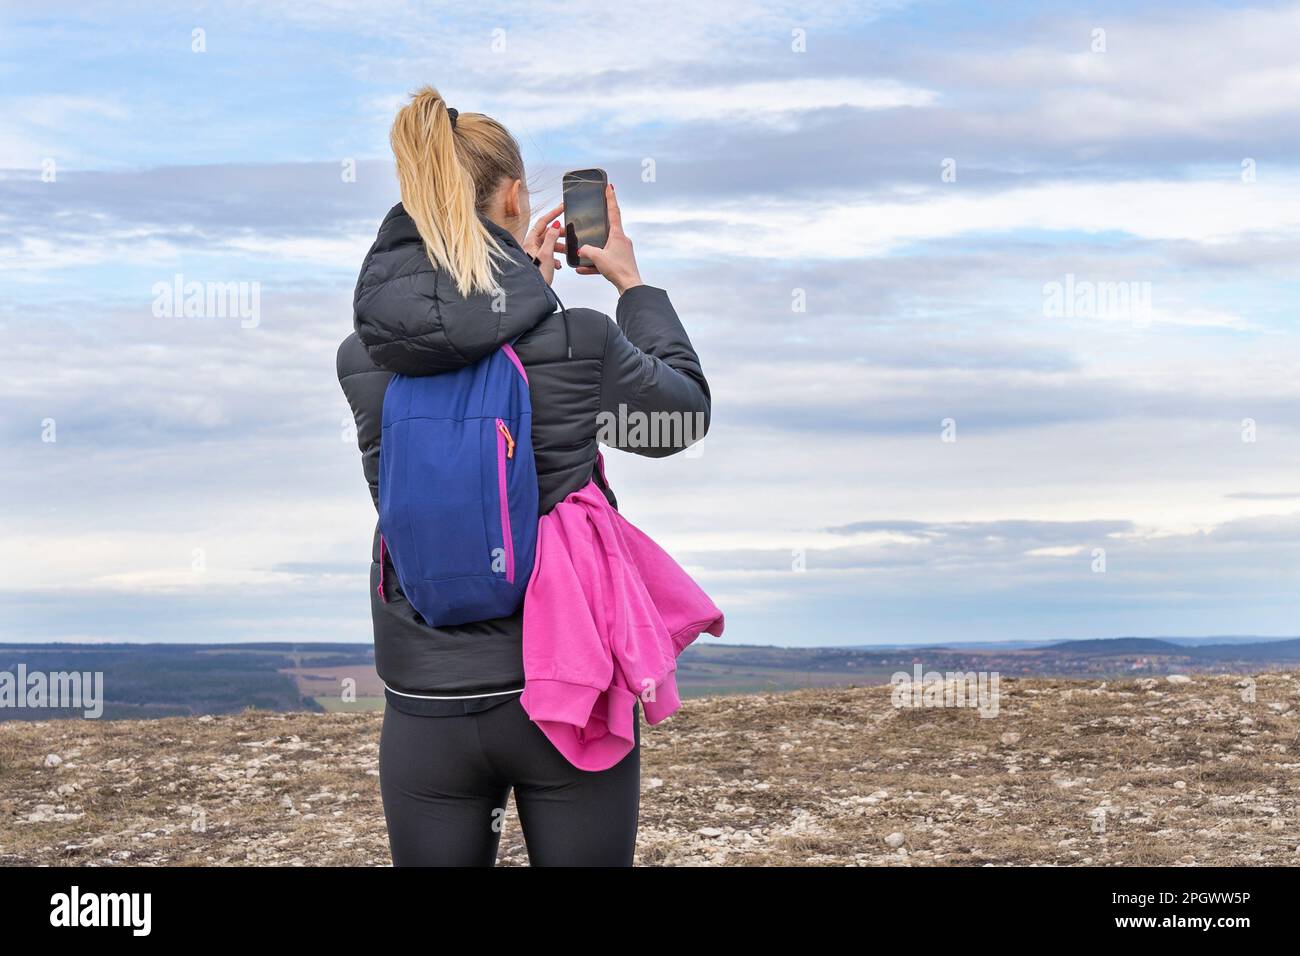 Mujer rubia joven deportiva que fotografía el paisaje con el teléfono móvil Foto de stock